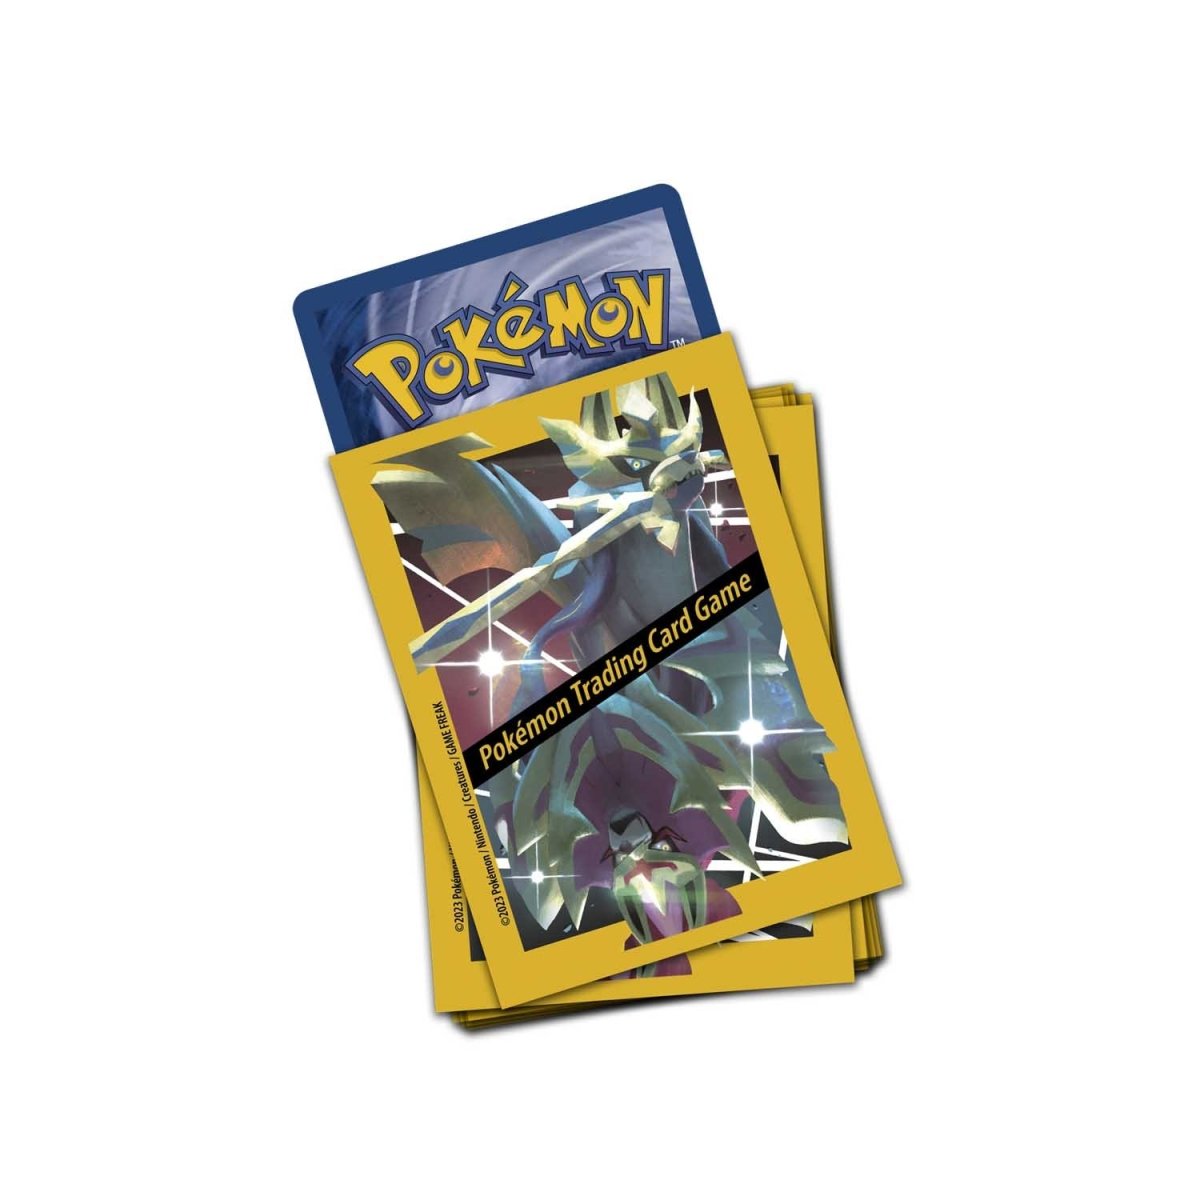 Zacian & Zamazenta Pokémon Pins (2-Pack)